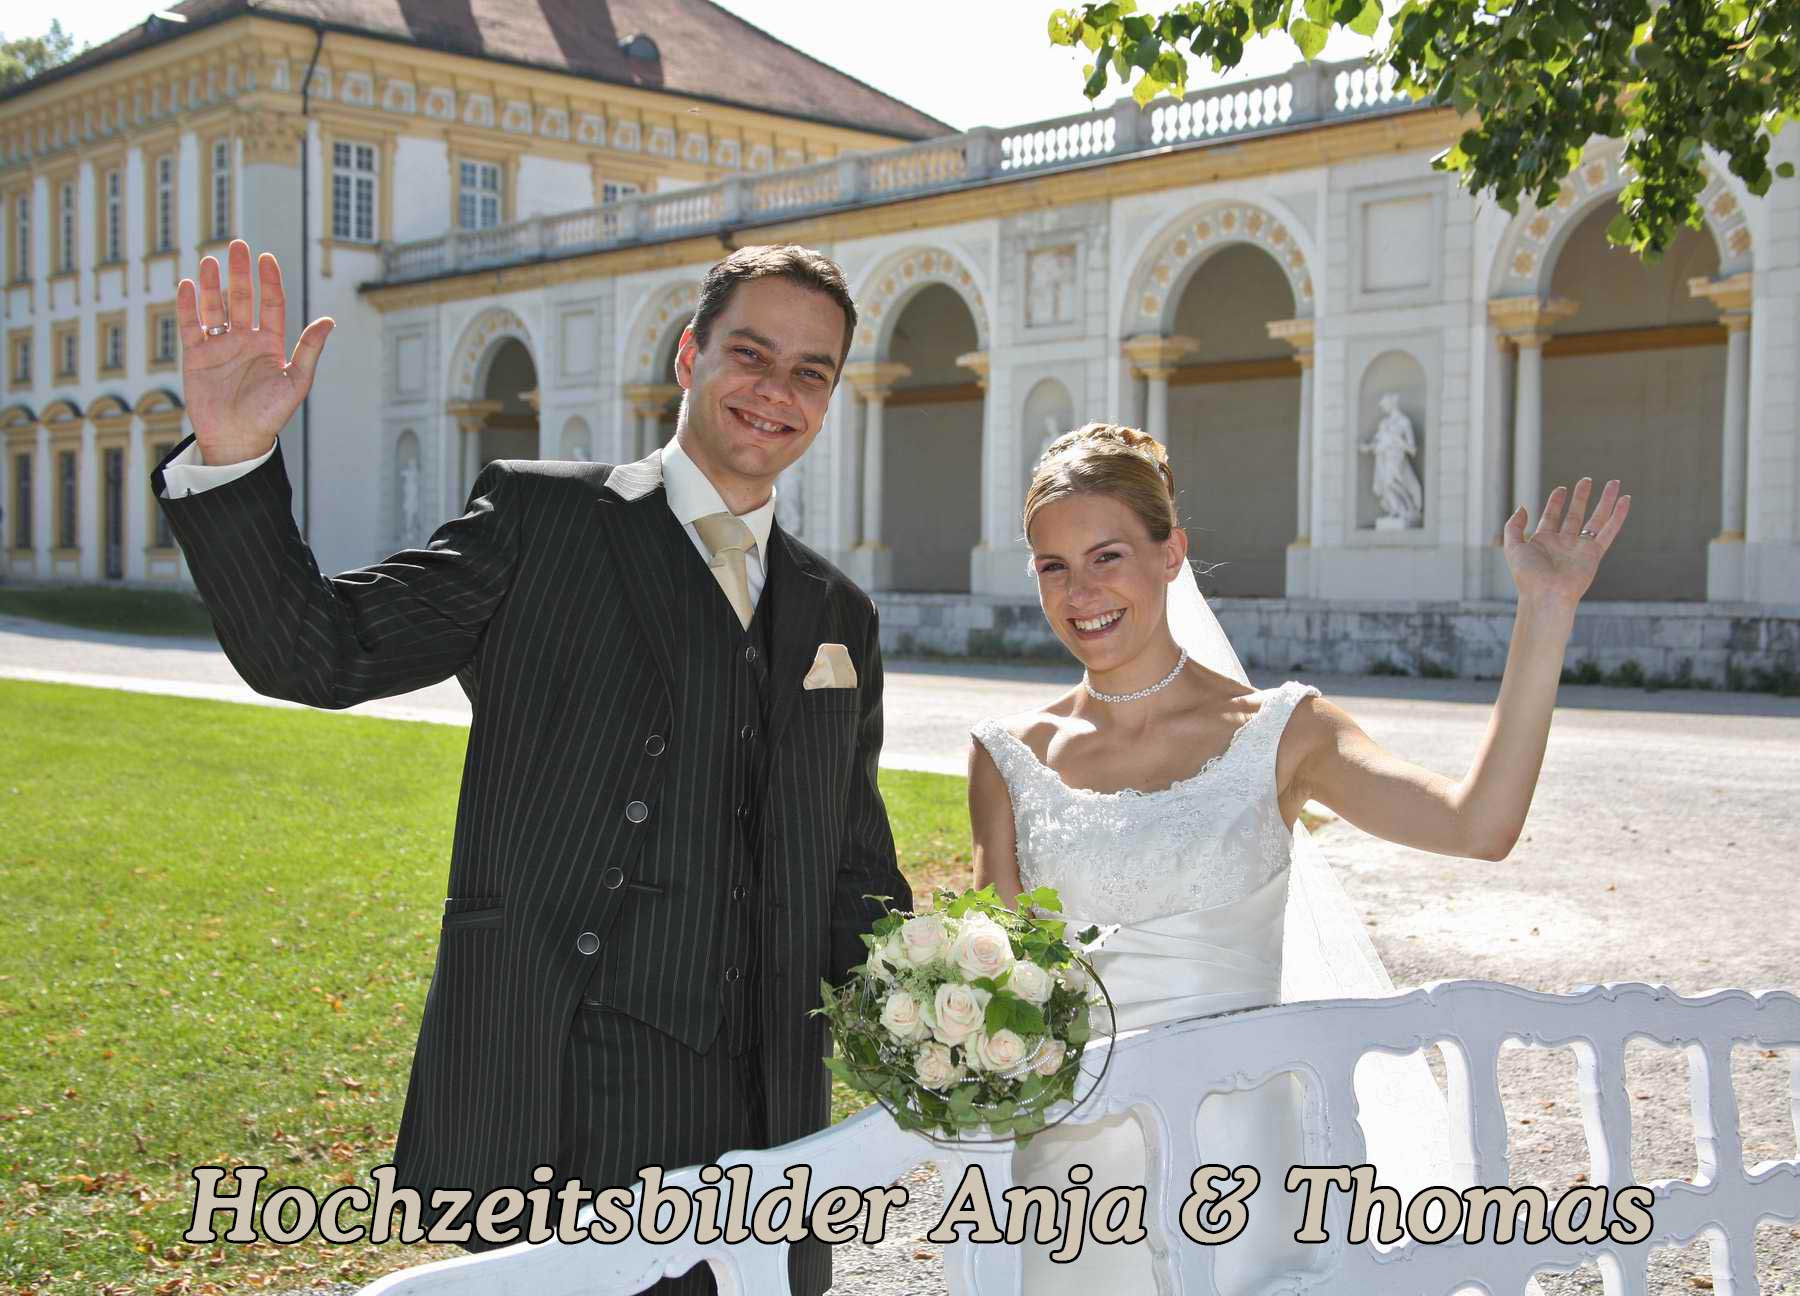 Hochzeitsbilder-Anja-&-Thomas